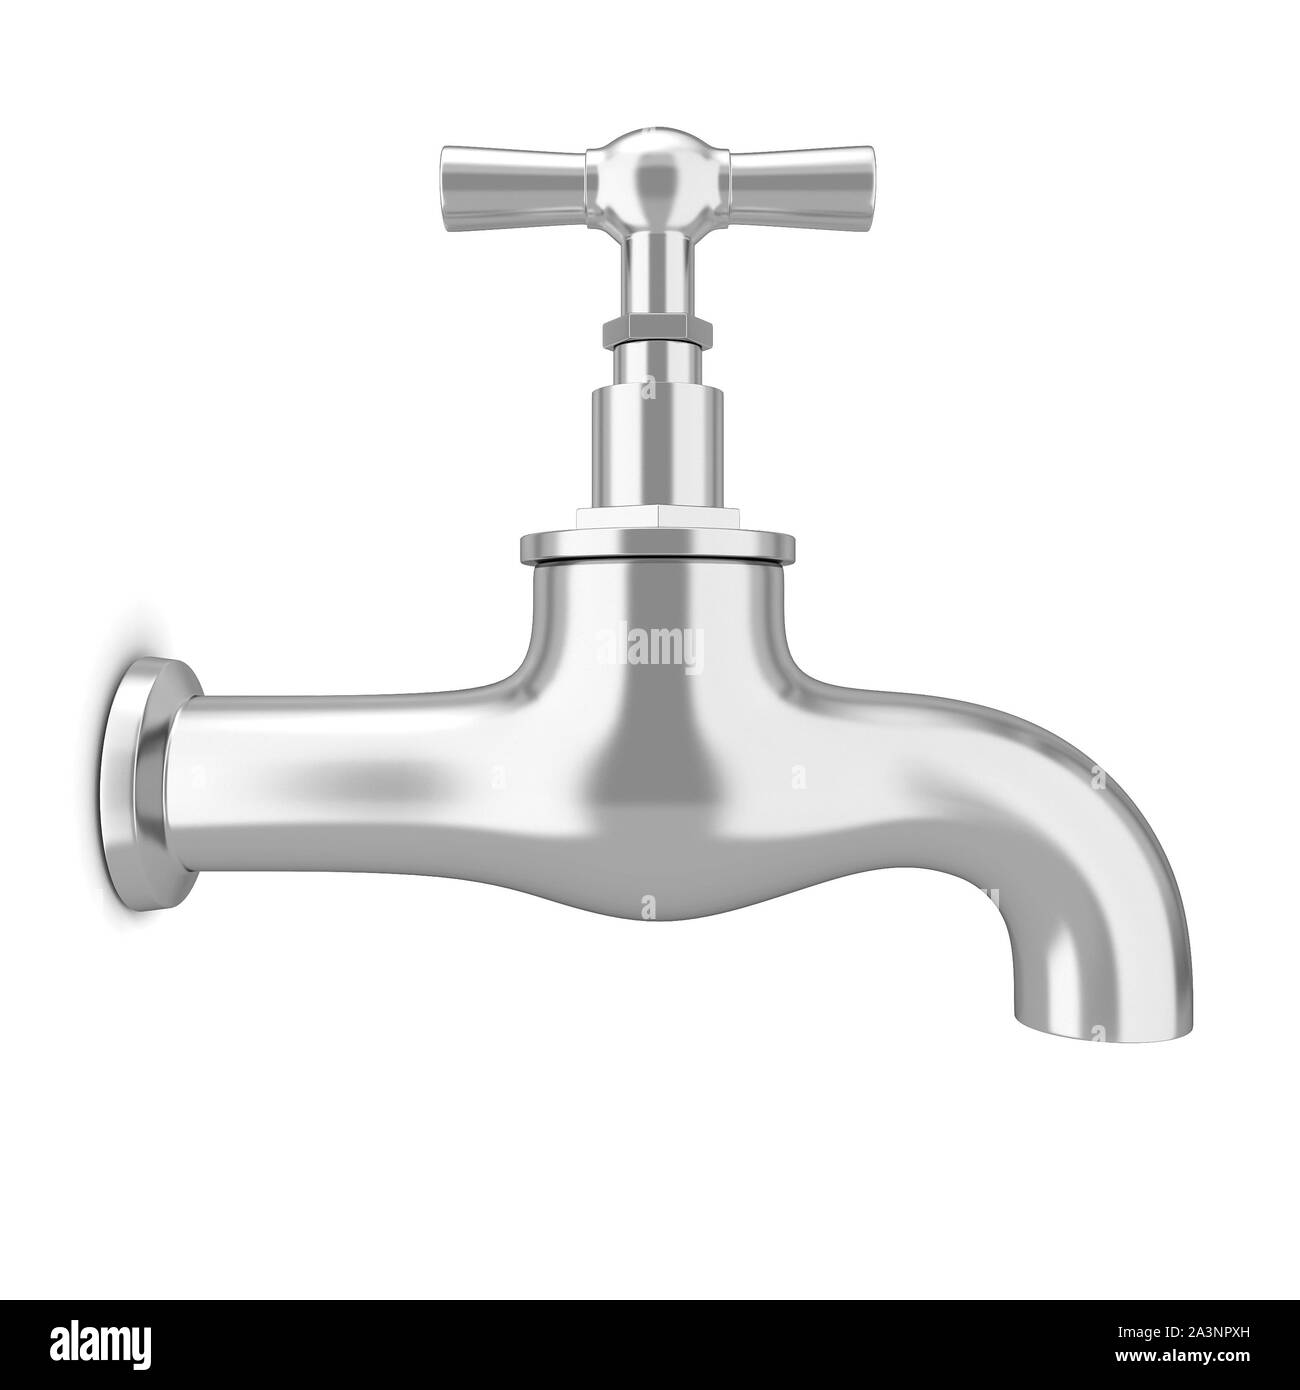 Un robinet d'eau. 3d illustration isolé sur fond blanc Photo Stock - Alamy